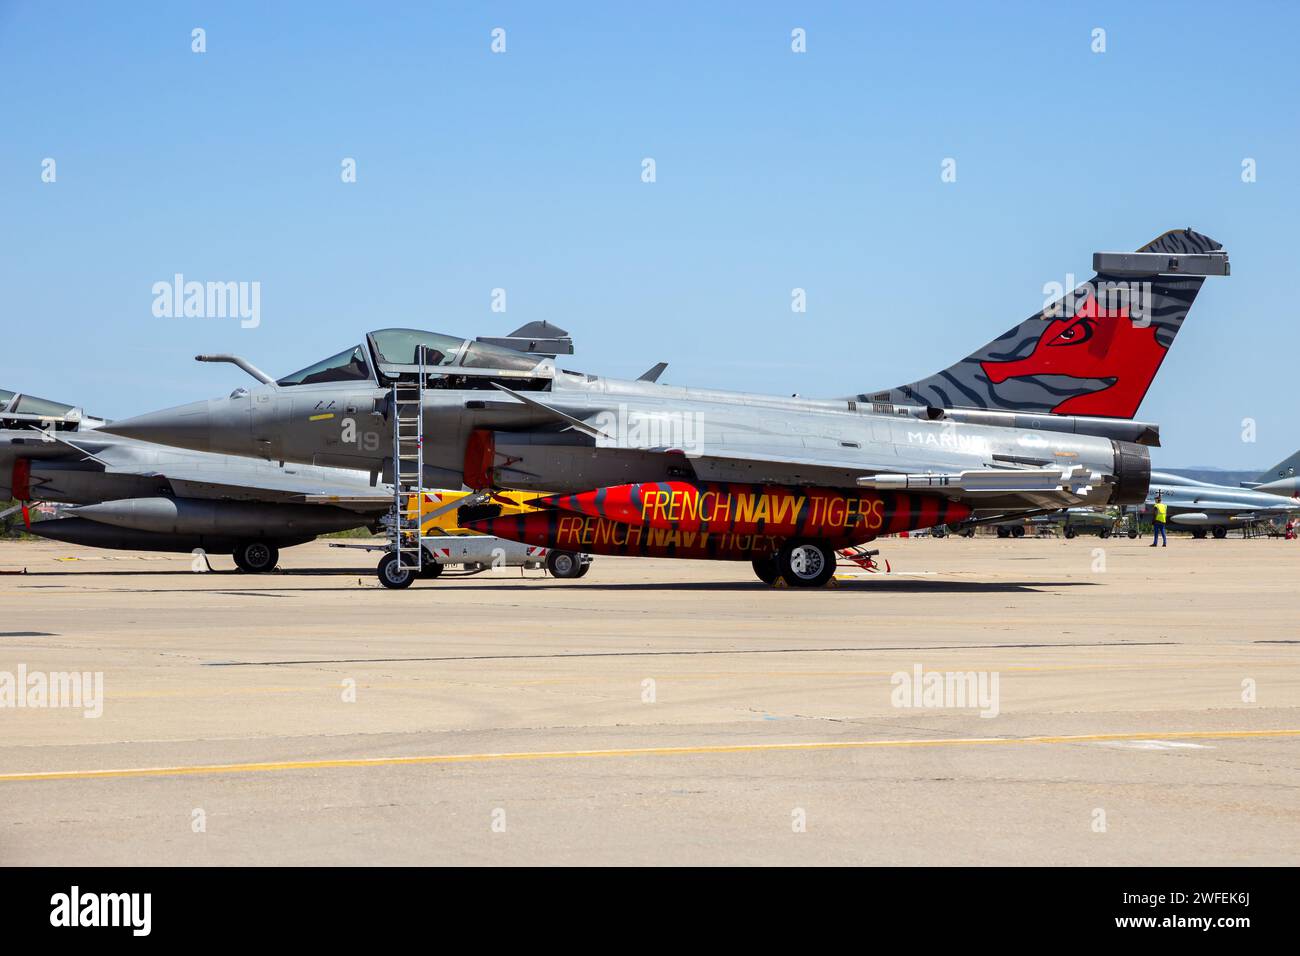 Kampfflugzeuge der französischen Marine Rafale bereiten sich auf dem Rollfeld des Luftwaffenstützpunkts Saragoza vor. Saragoza, Spanien - 20. Mai 2016 Stockfoto